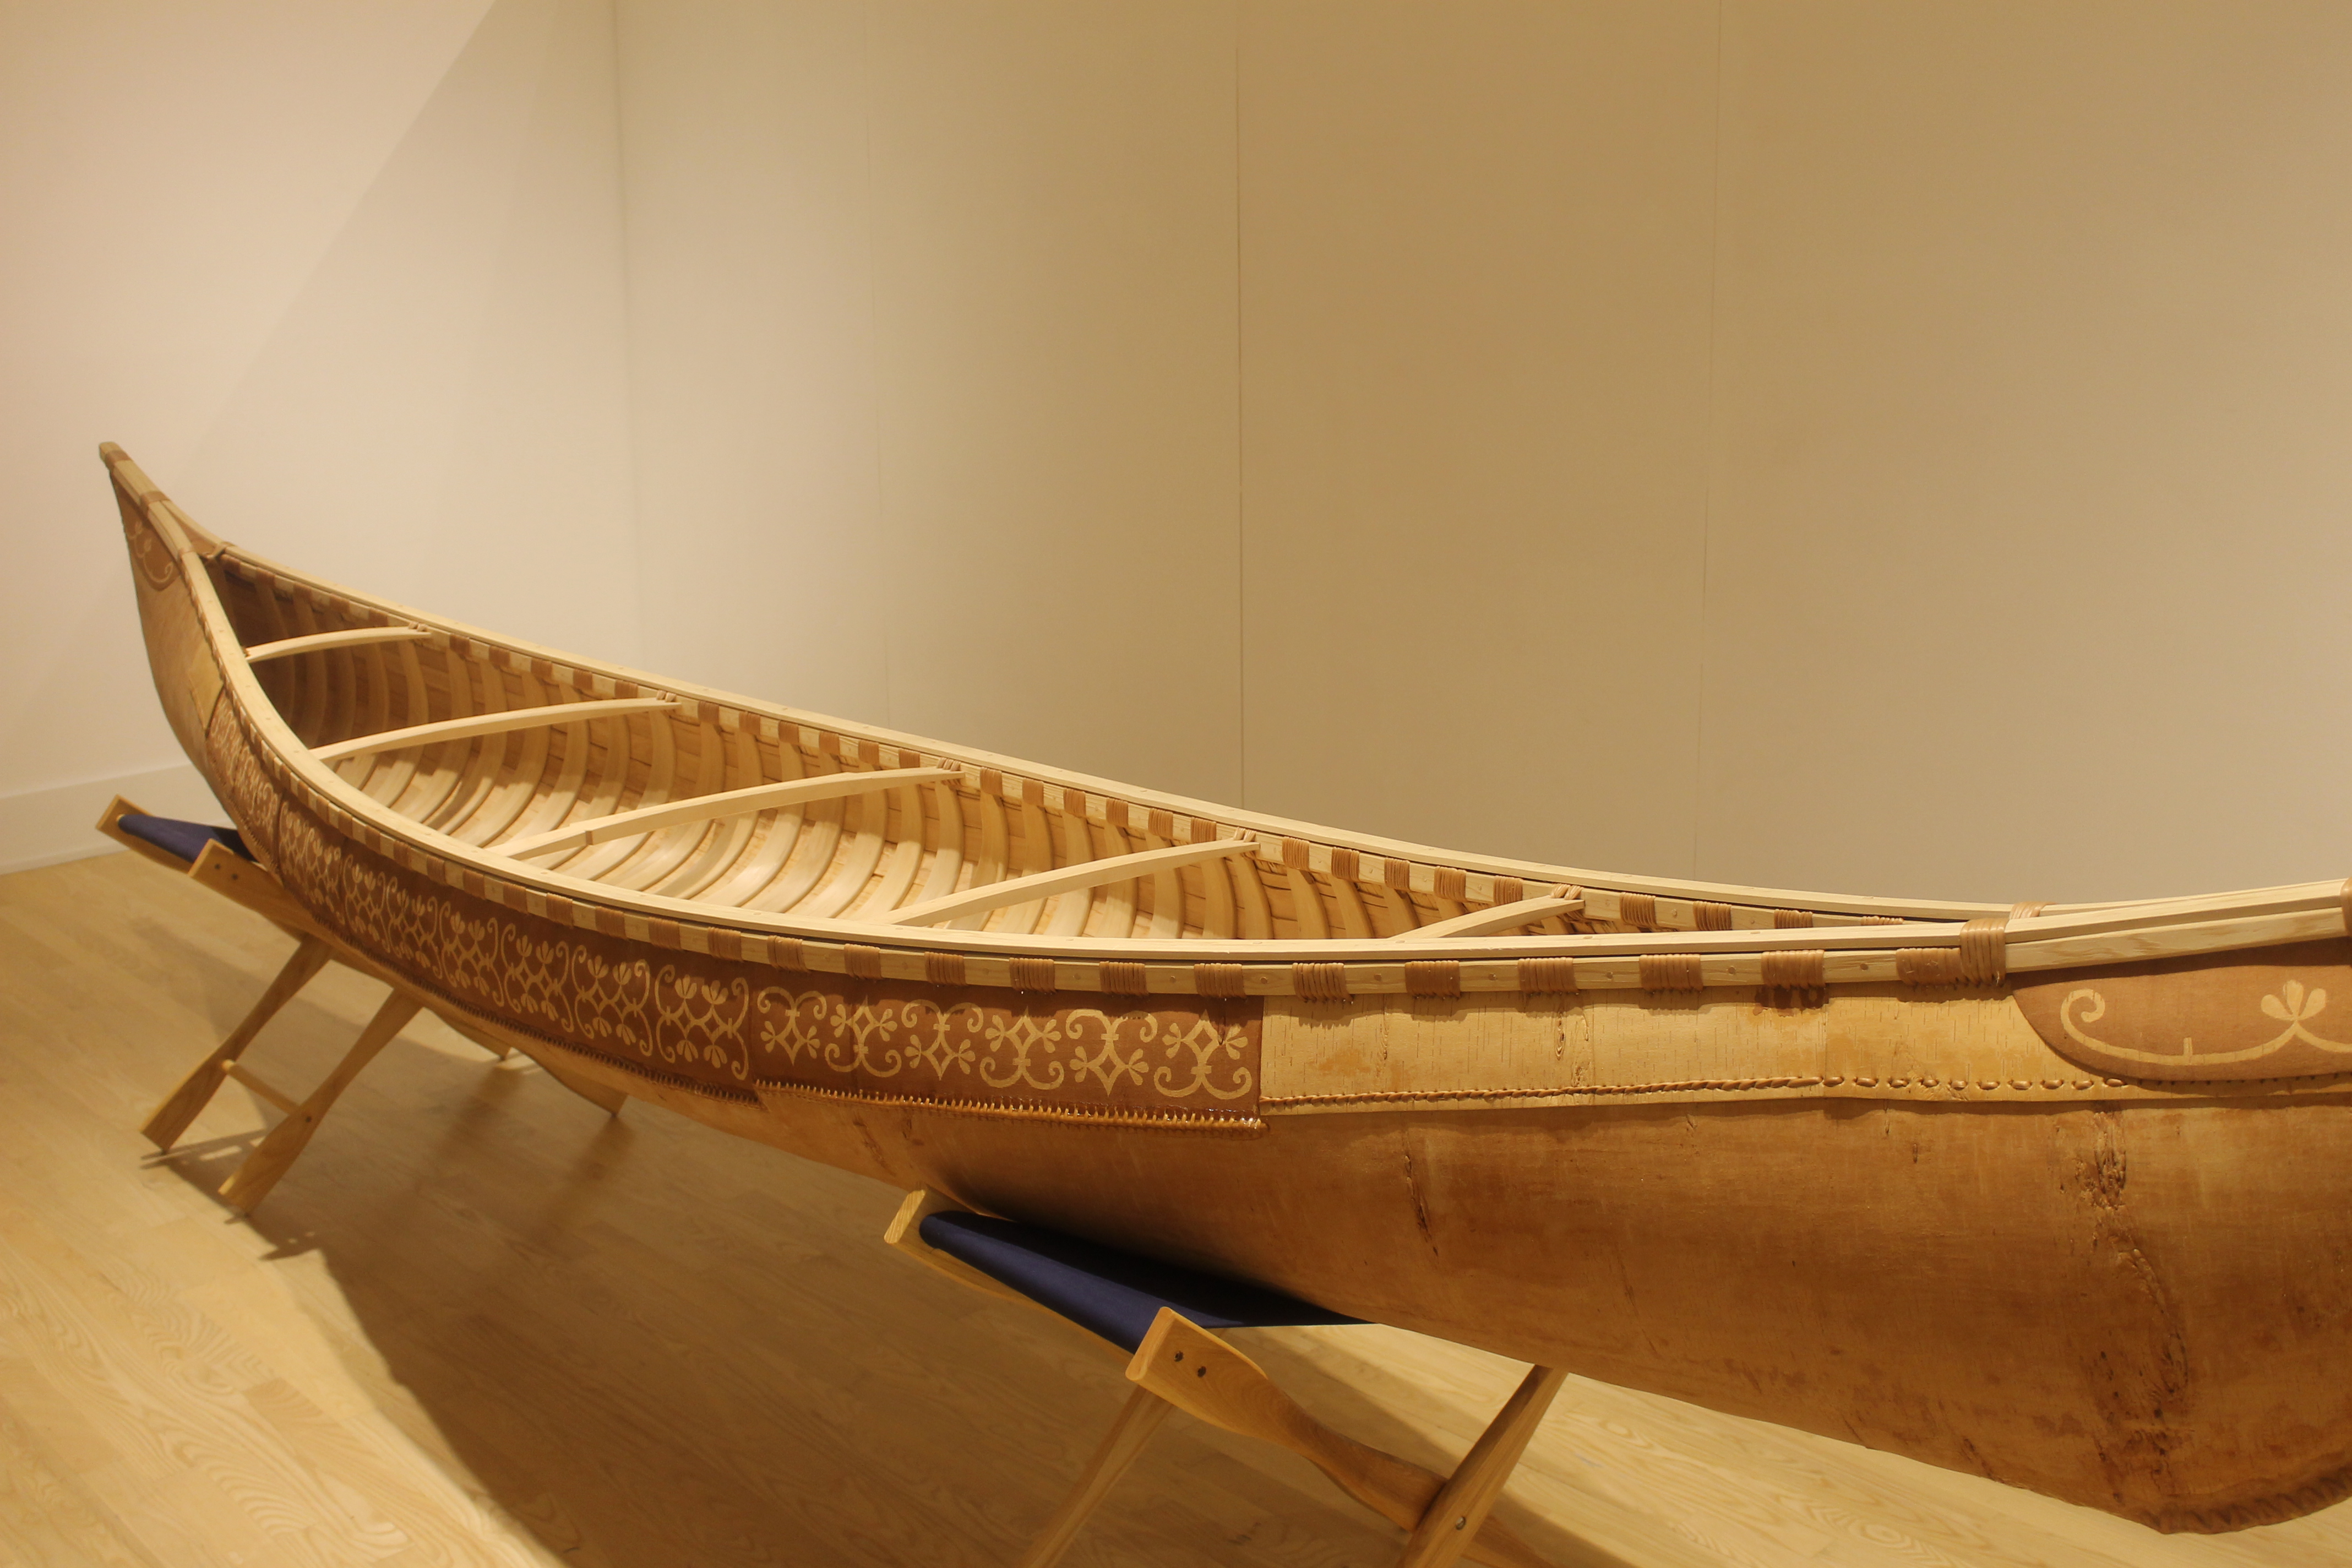 Birch Bark Canoe Diagram canoe - wikipedia, the free encyclopedia